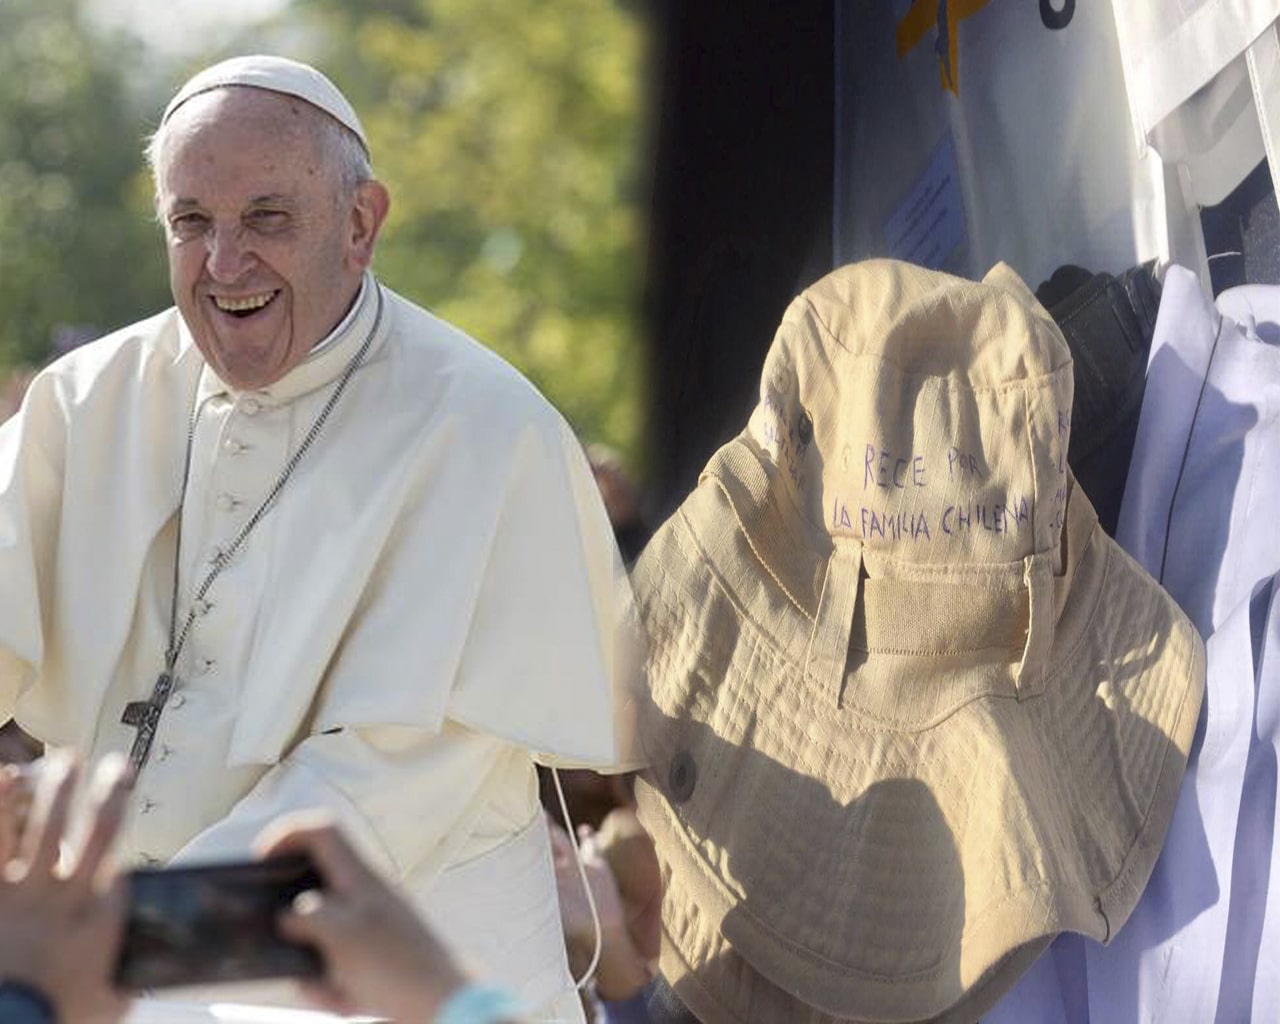 El Papa en Chile: Esta es la verdad sobre el objeto que le golpeó el rostro